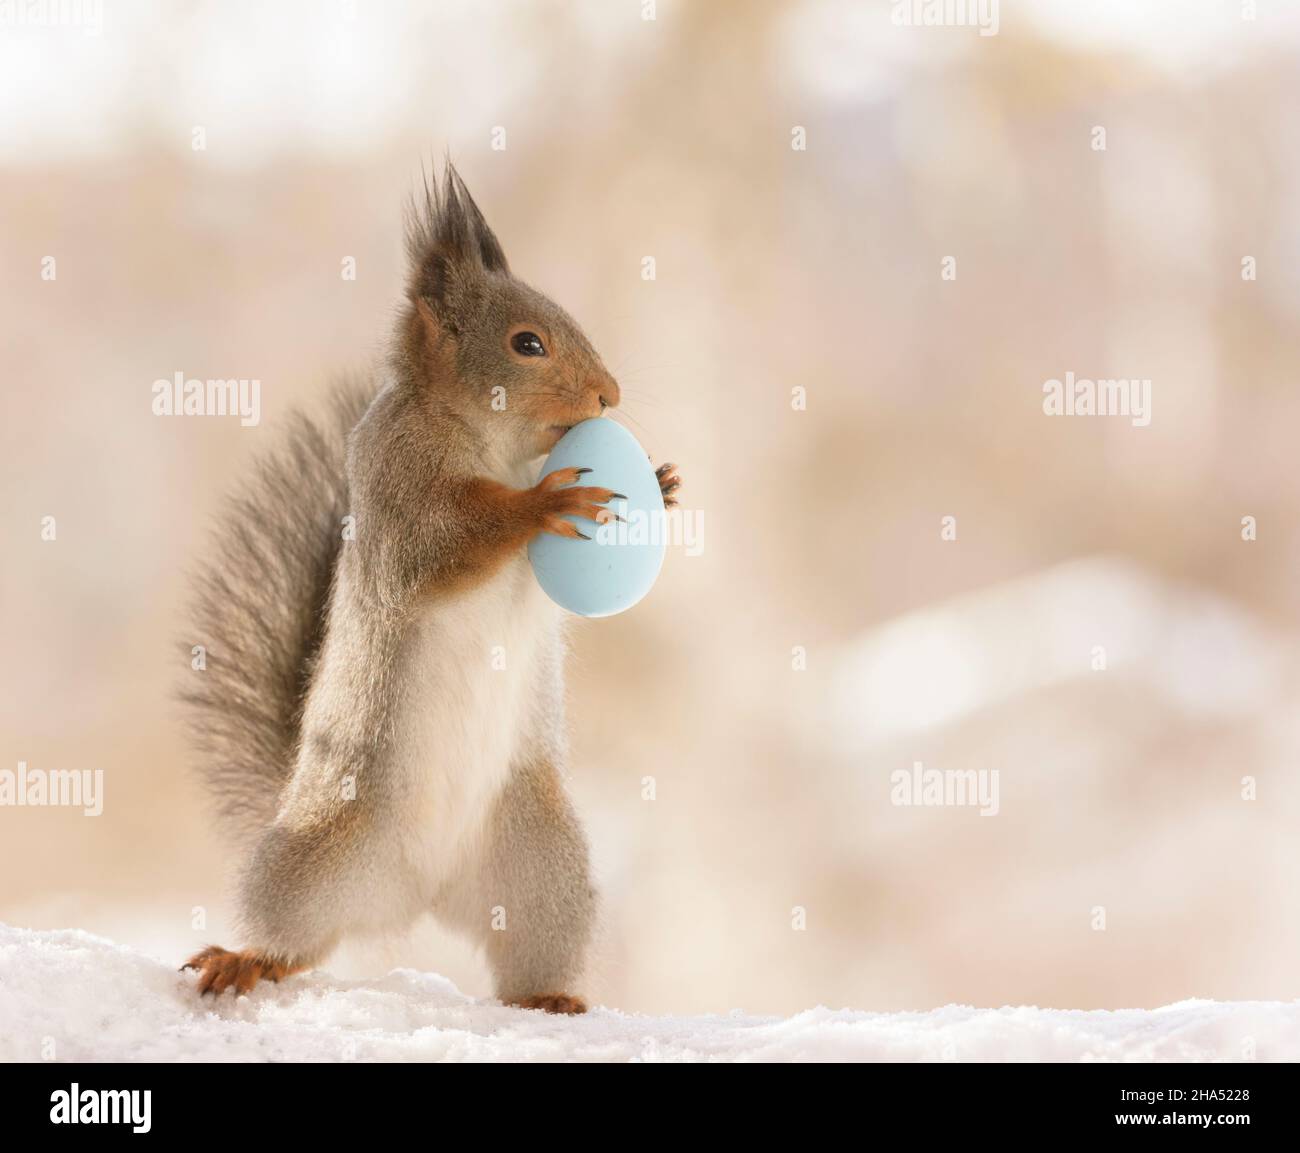 Eichhörnchen hält ein blaues Ei Stockfoto